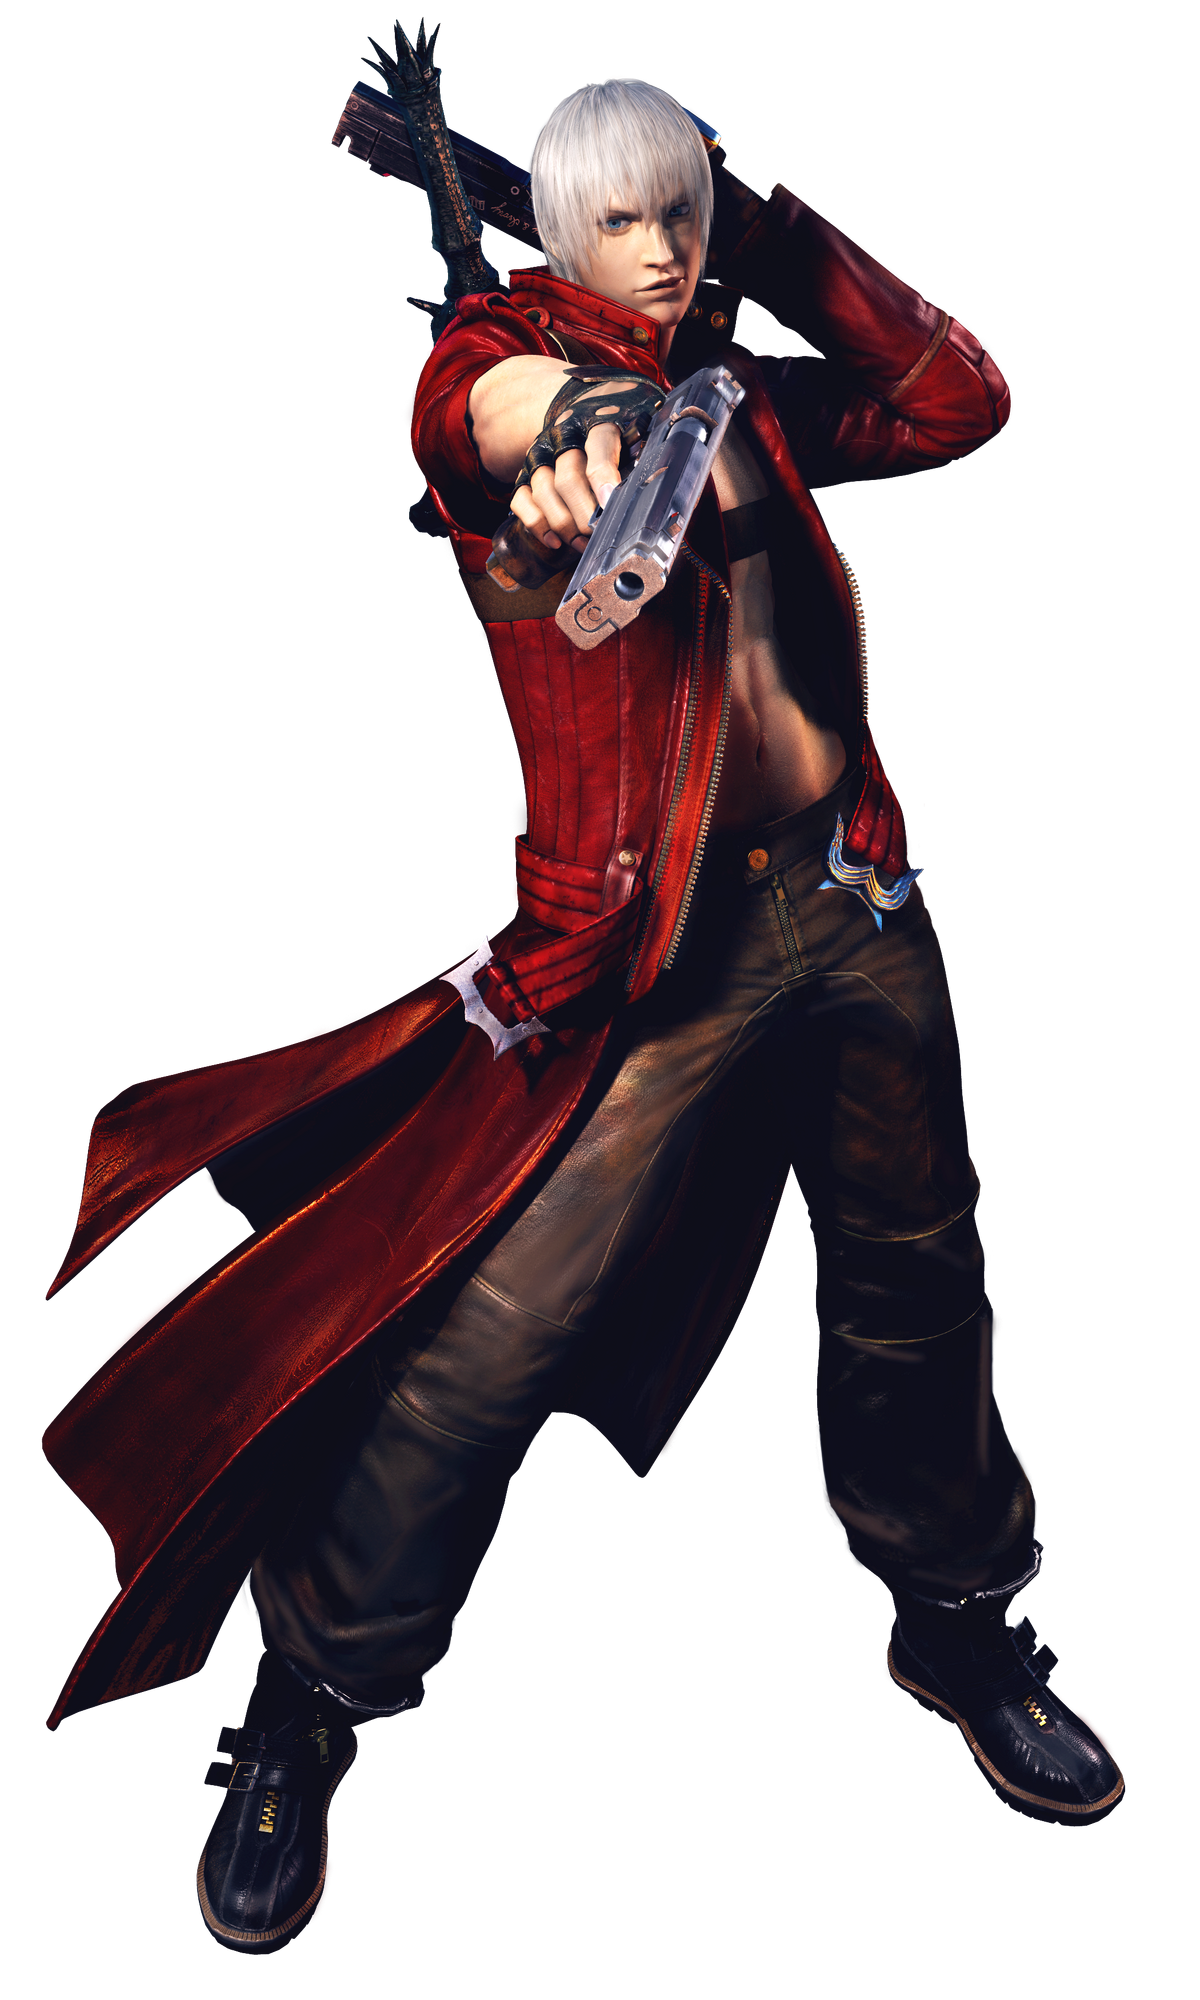 Nick Gomes - Espada do Dante do game Devil May Cry